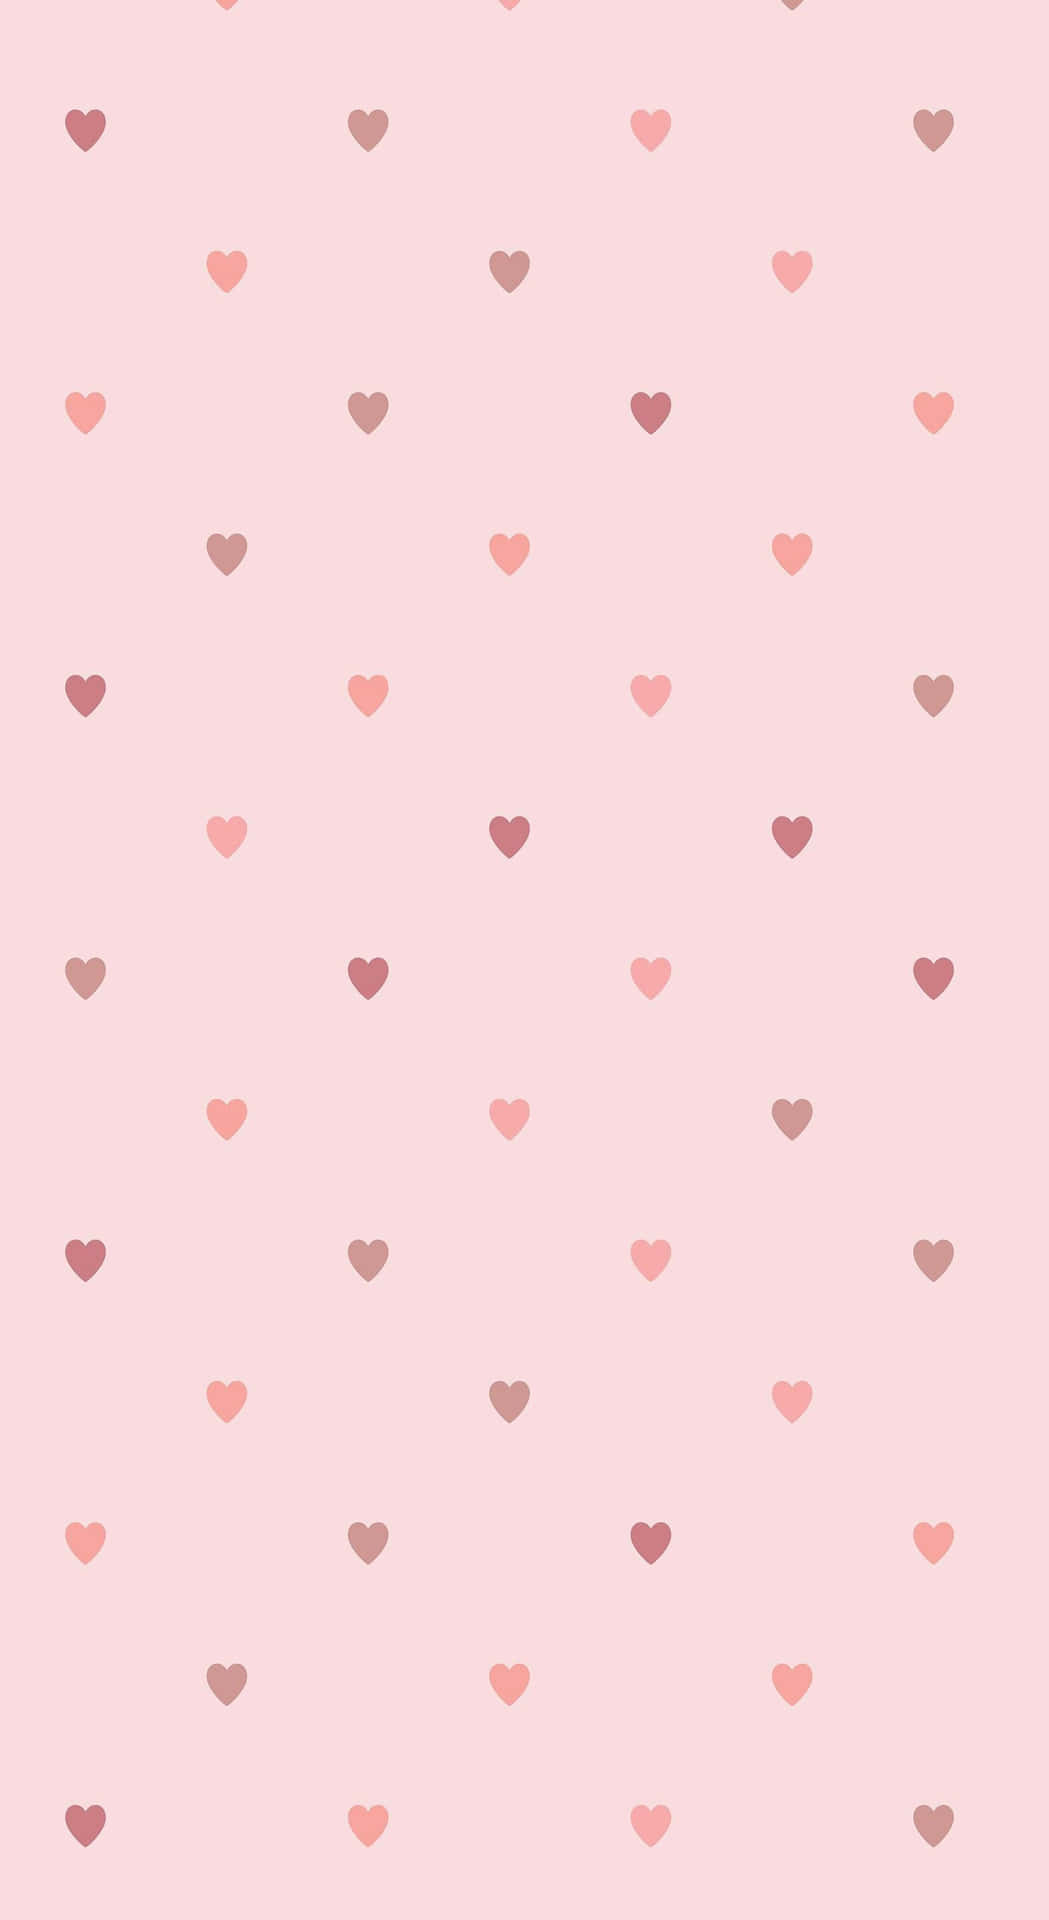 Vis din kærlighedstema med Glitter Pink Hjerter. Wallpaper